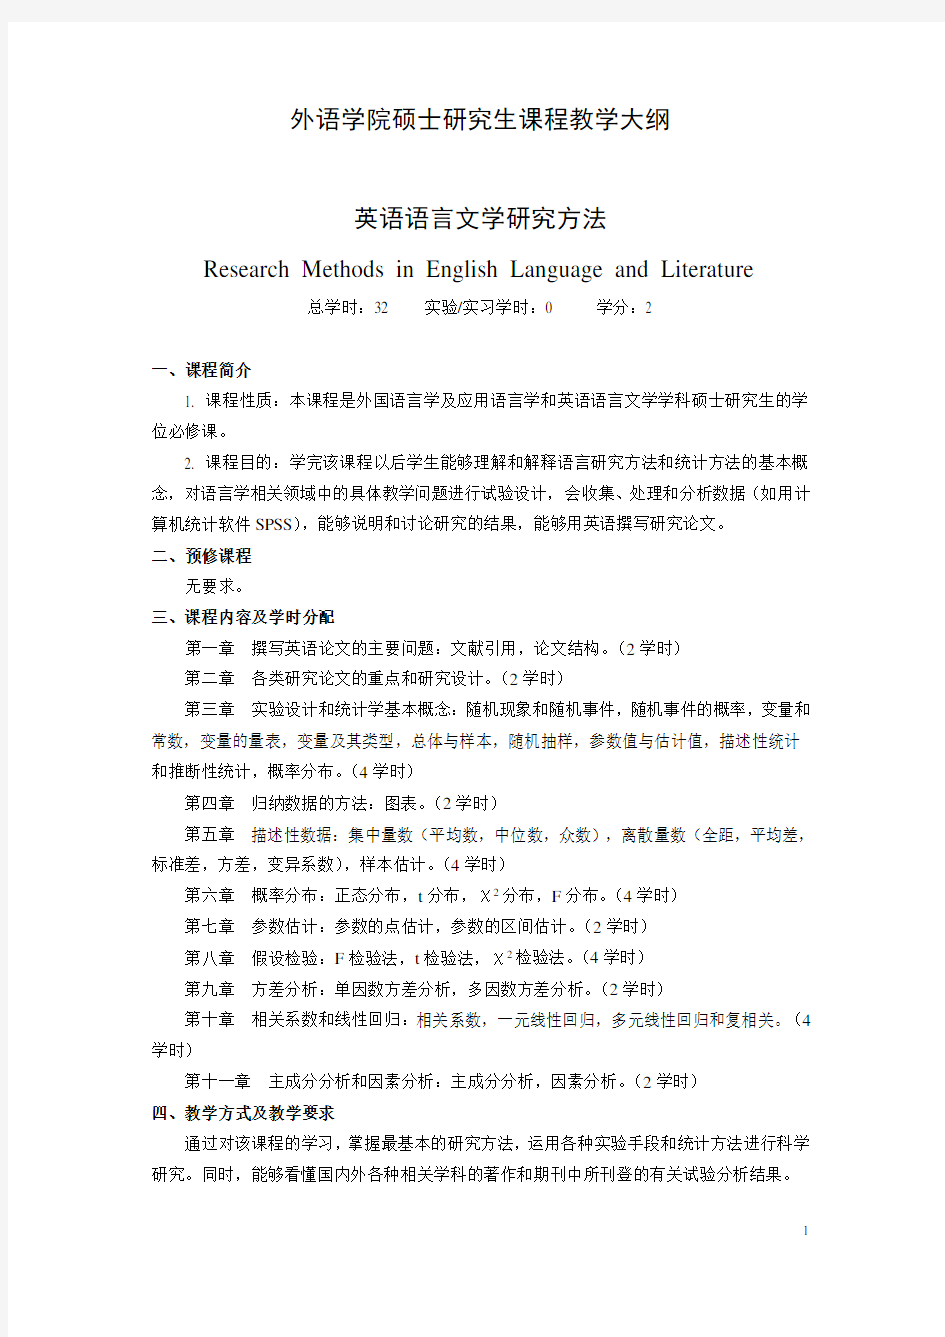 英语学术论文与研究方法-北京林业大学外语学院